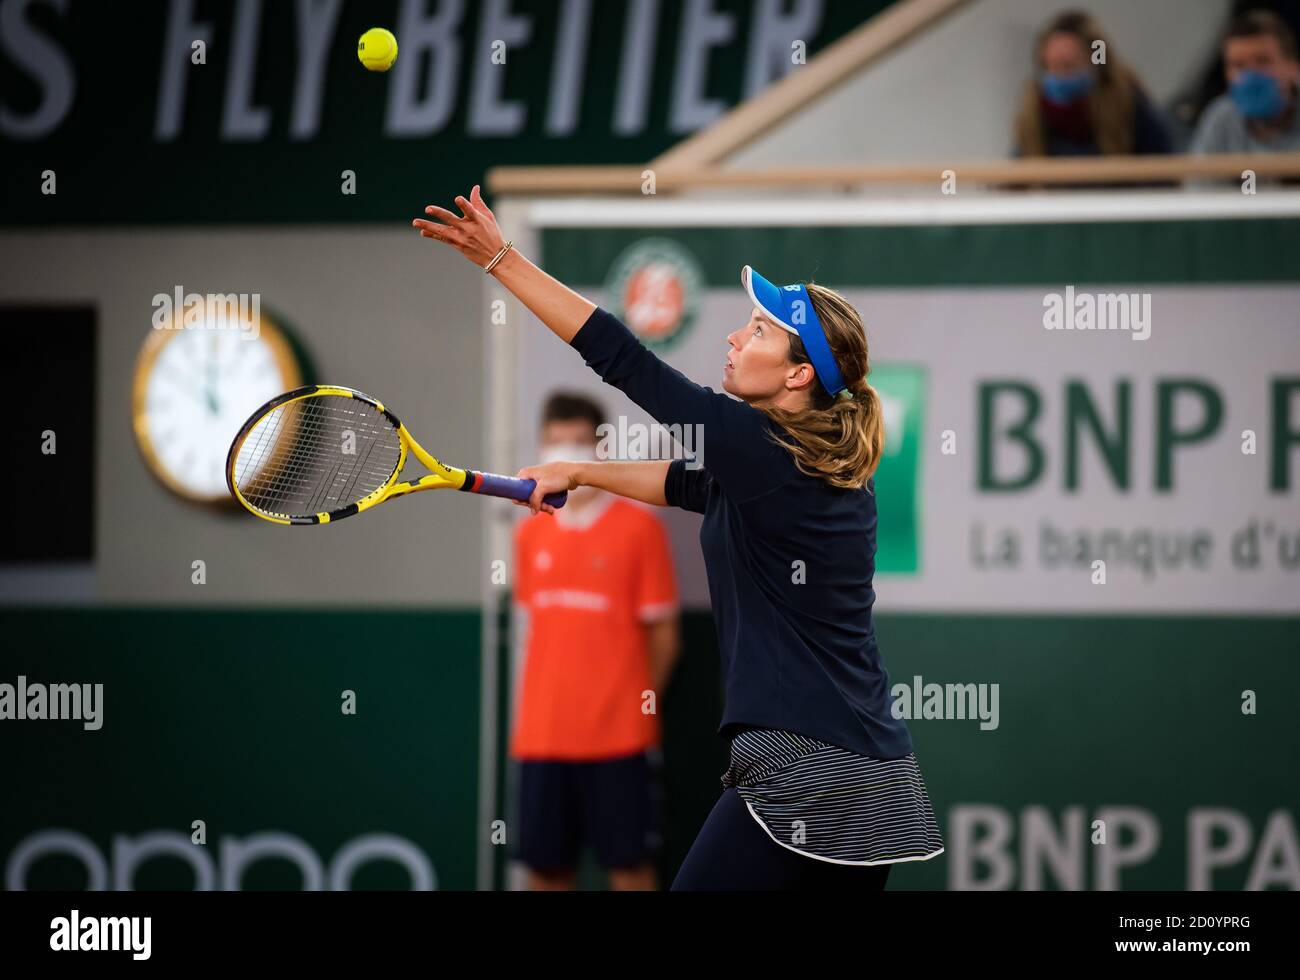 Danielle Collins degli Stati Uniti in azione contro Garbine Muguruza della Spagna durante il terzo round al Roland Garros 2020, Grand Slam tennis Foto Stock